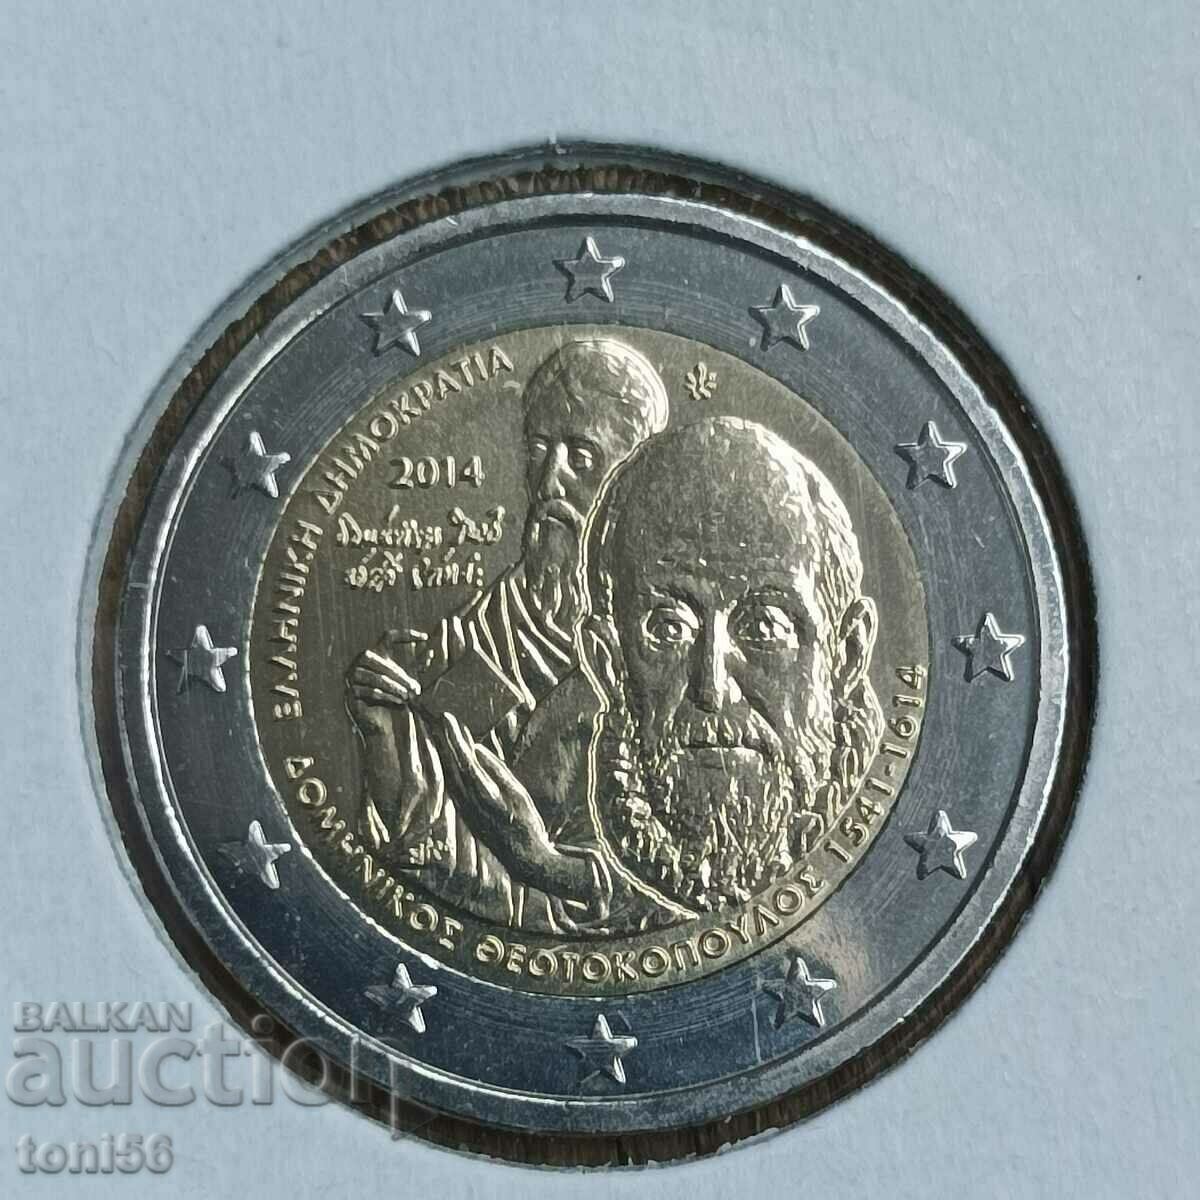 Grecia 2 euro 2014 - El Greco